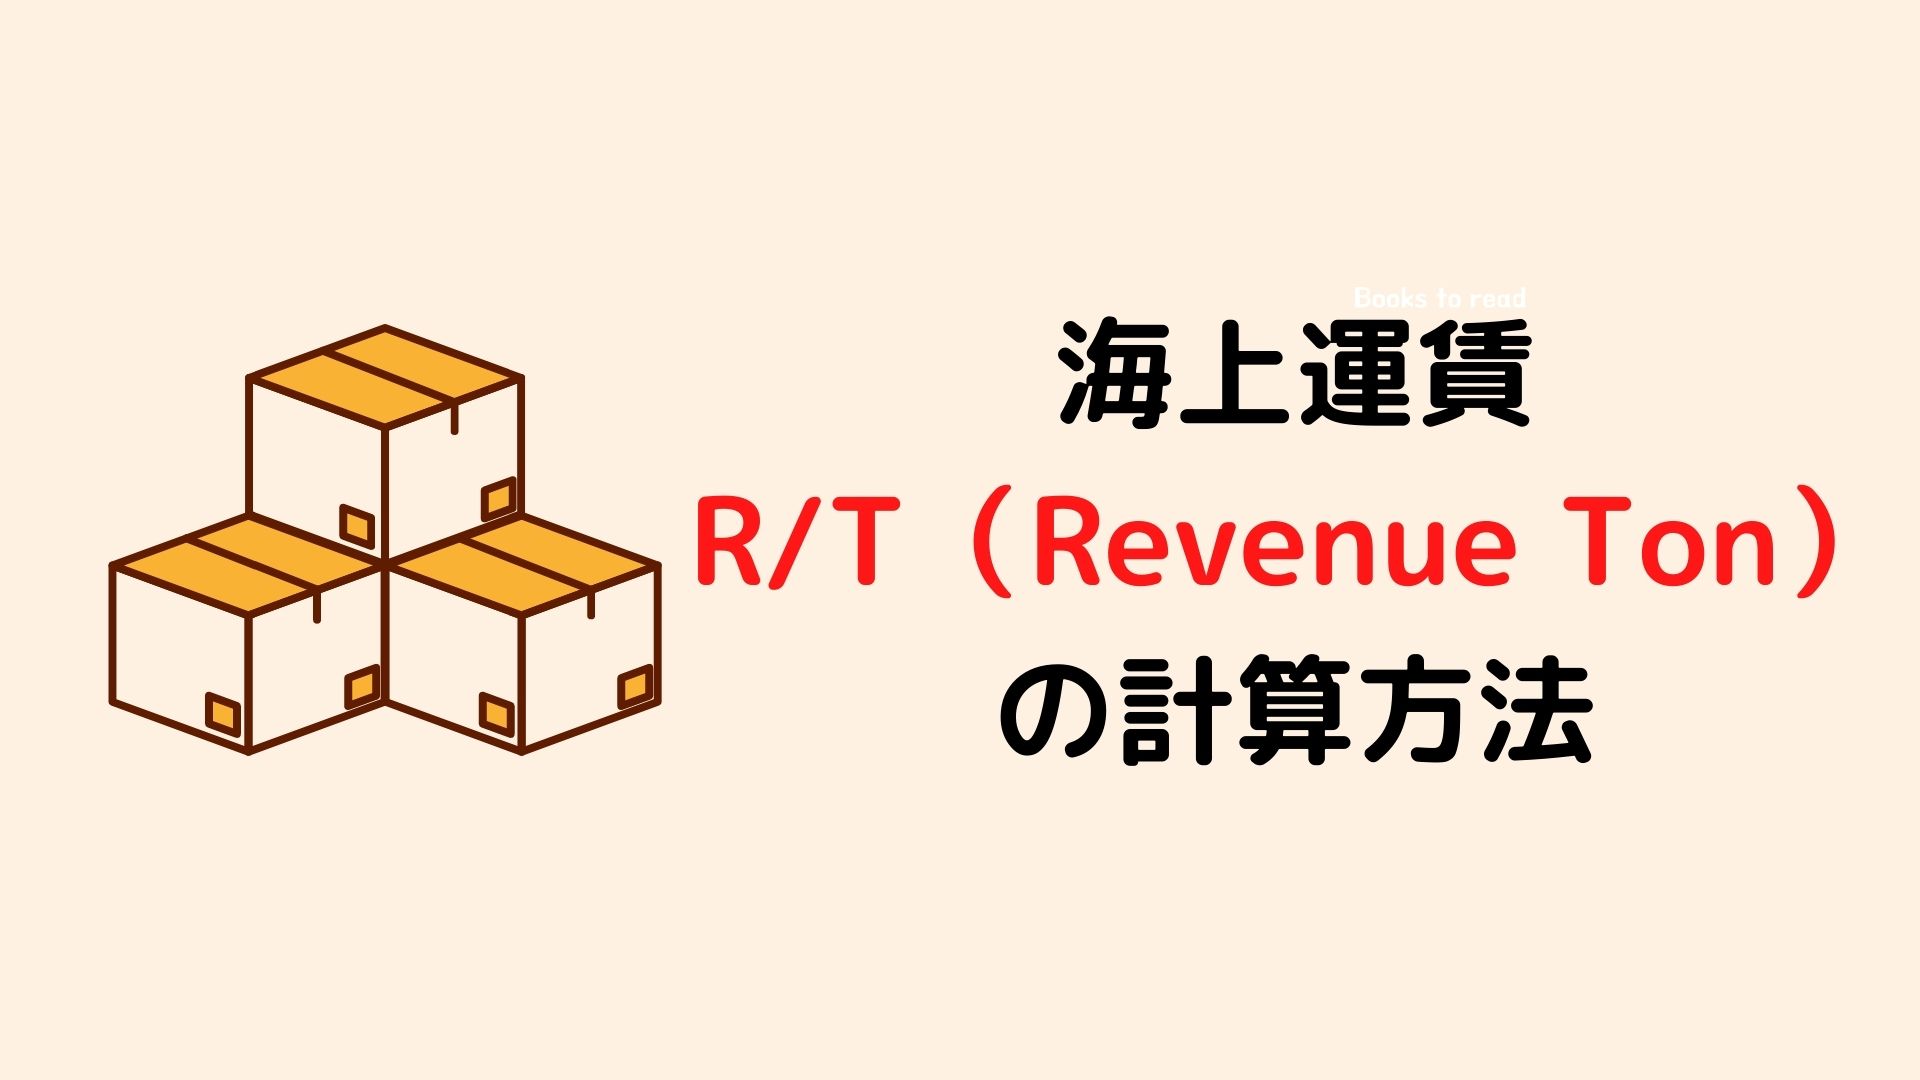 海上運賃の単位 R T Revenue Ton の計算方法 スキルのメモ帳